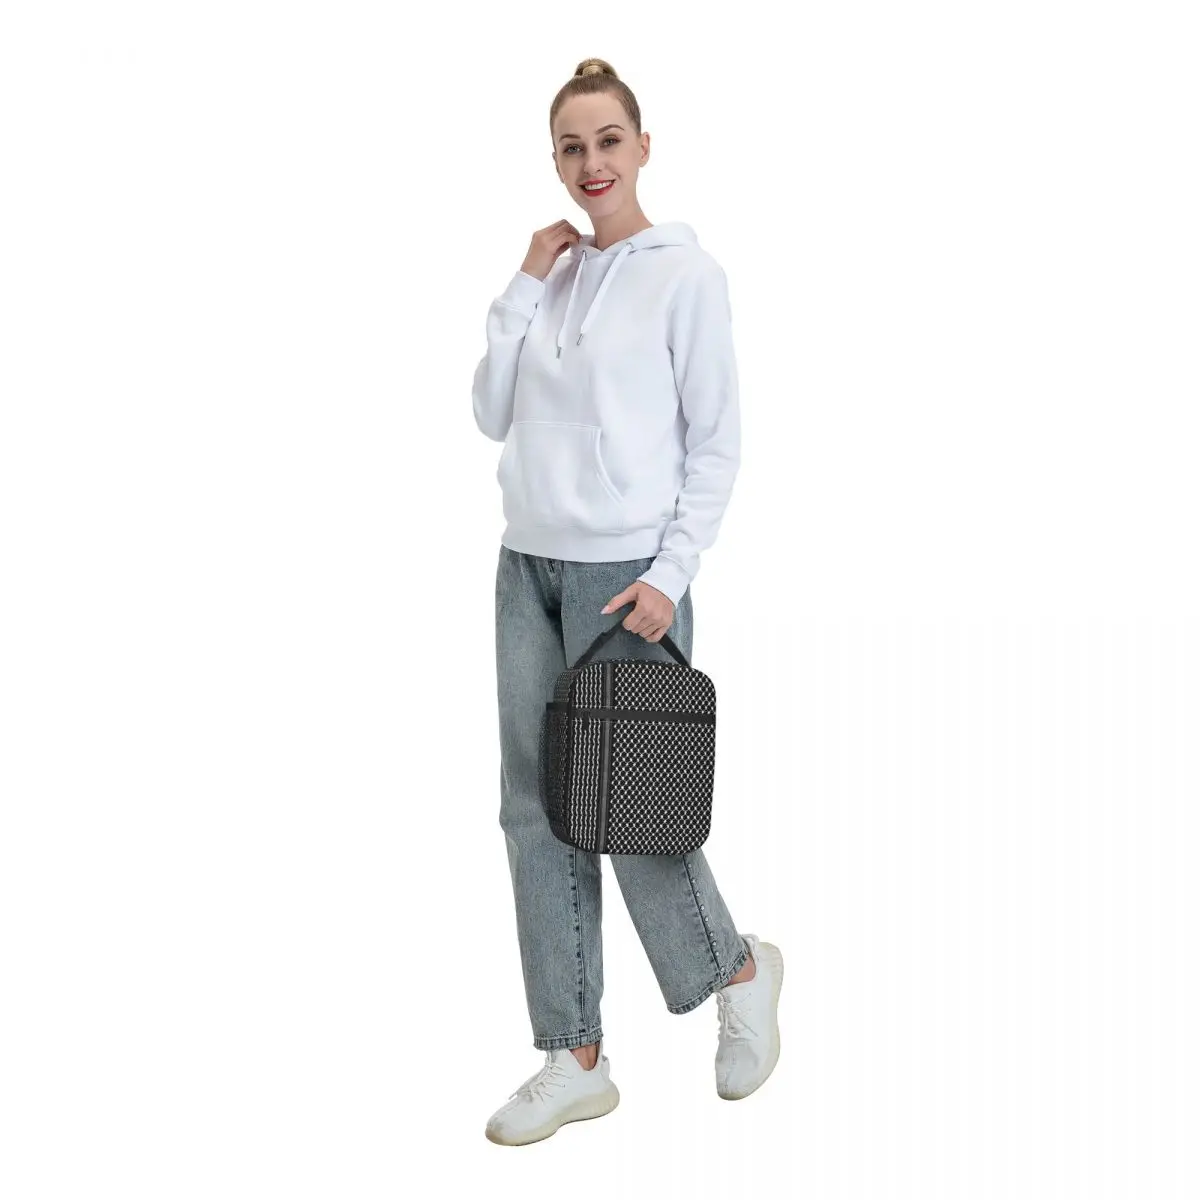 Палестинская Хатта Куфия, народная изолированная сумка для ланча для женщин, переносная сумка для ланча с термоохладителем Keffiyeh, Офисная сумка для пикника